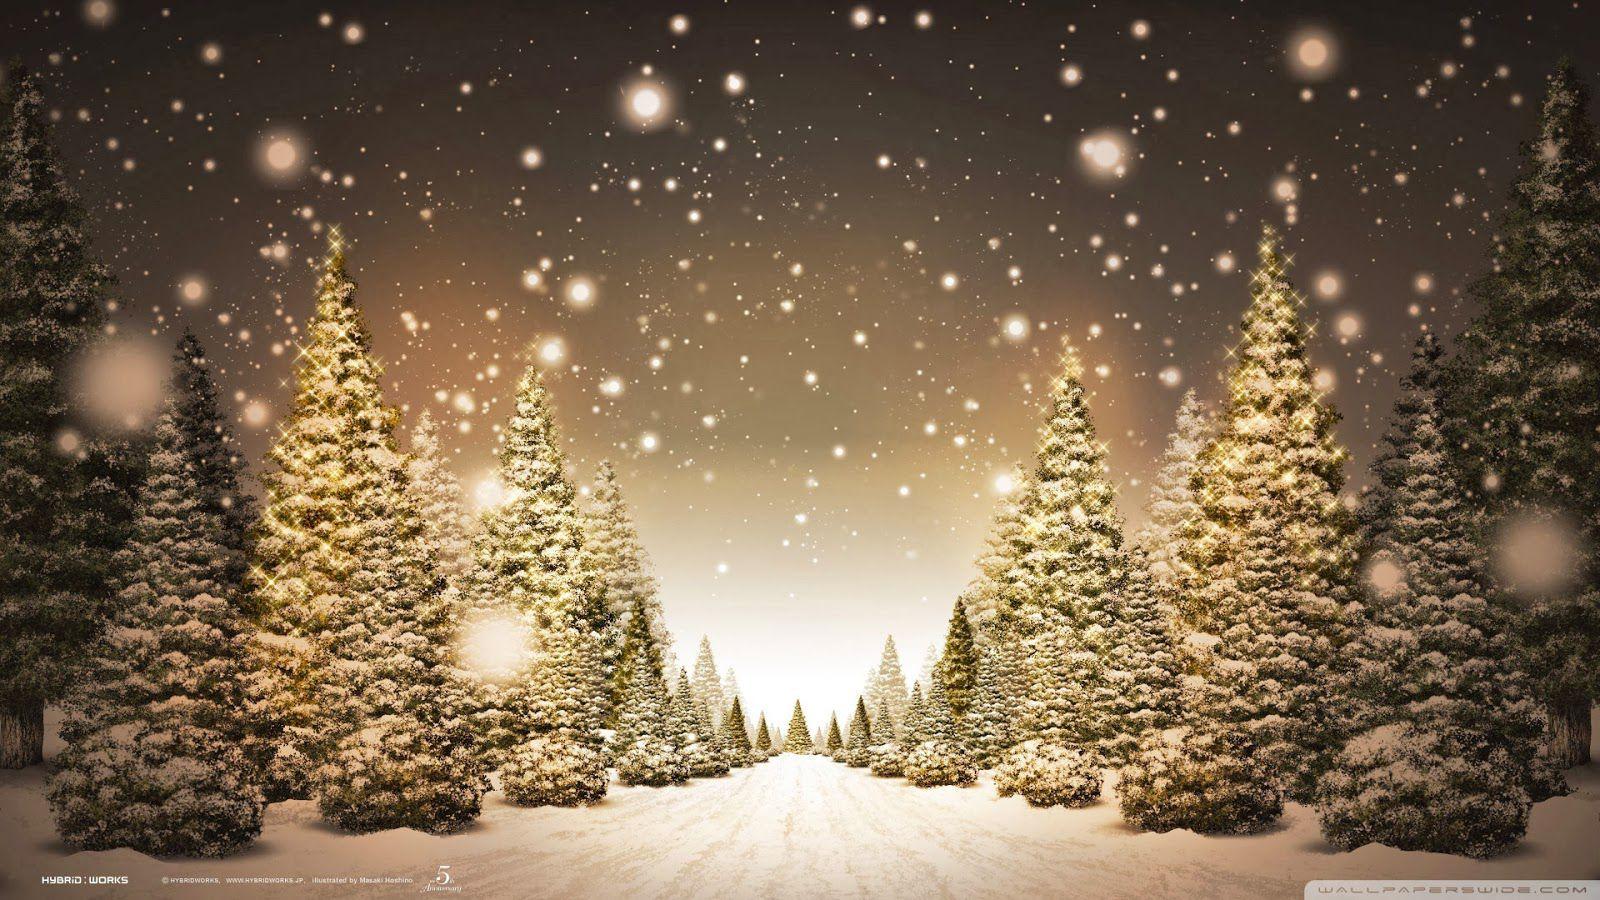 Bạn đang muốn tìm một tập hình nền Giáng sinh sang trọng và thanh lịch? Với tốp hình nền miễn phí này, bạn sẽ tìm được những hình ảnh đẹp nhất để trang trí màn hình máy tính của mình. Từ các hình ảnh tuyết phủ đến ông già Noel xinh đẹp, chọn ngay những hình ảnh mà bạn yêu thích.